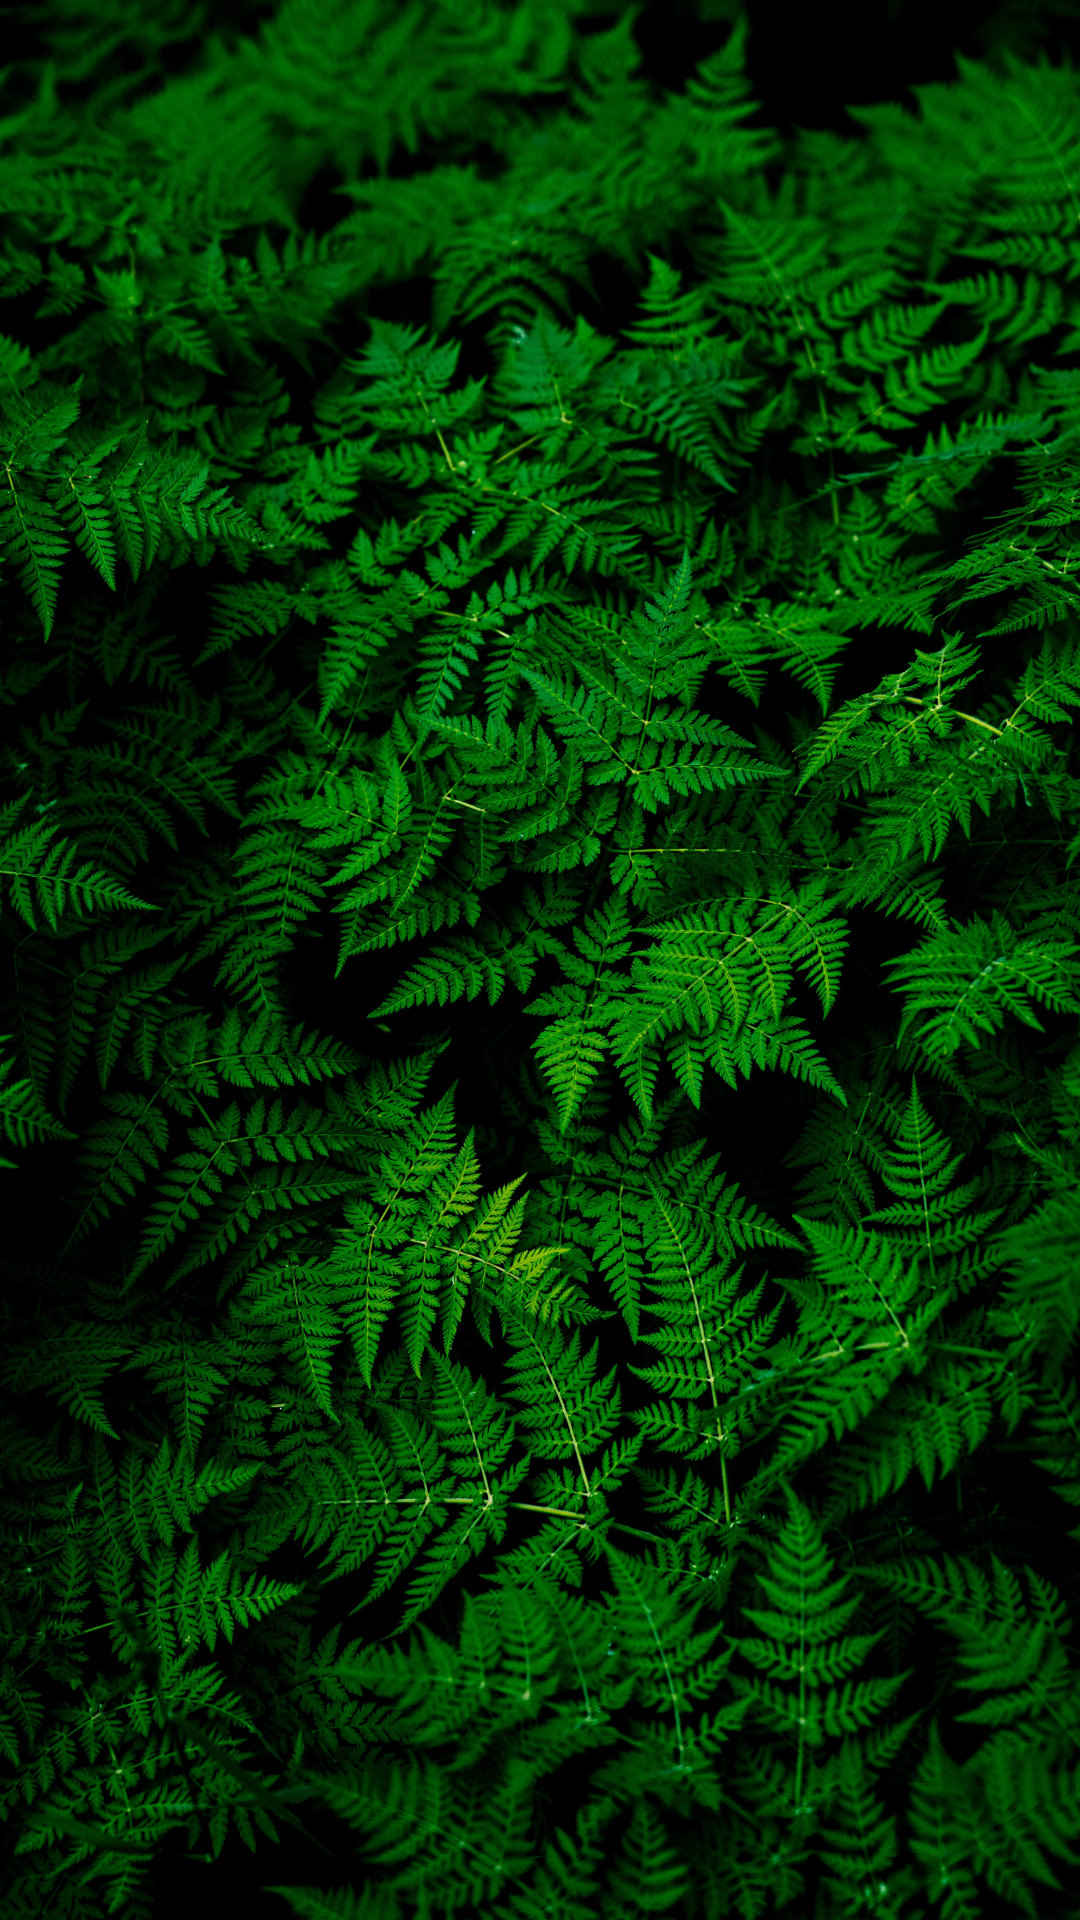 森林里的绿叶草丛超火绿色丧系壁纸-